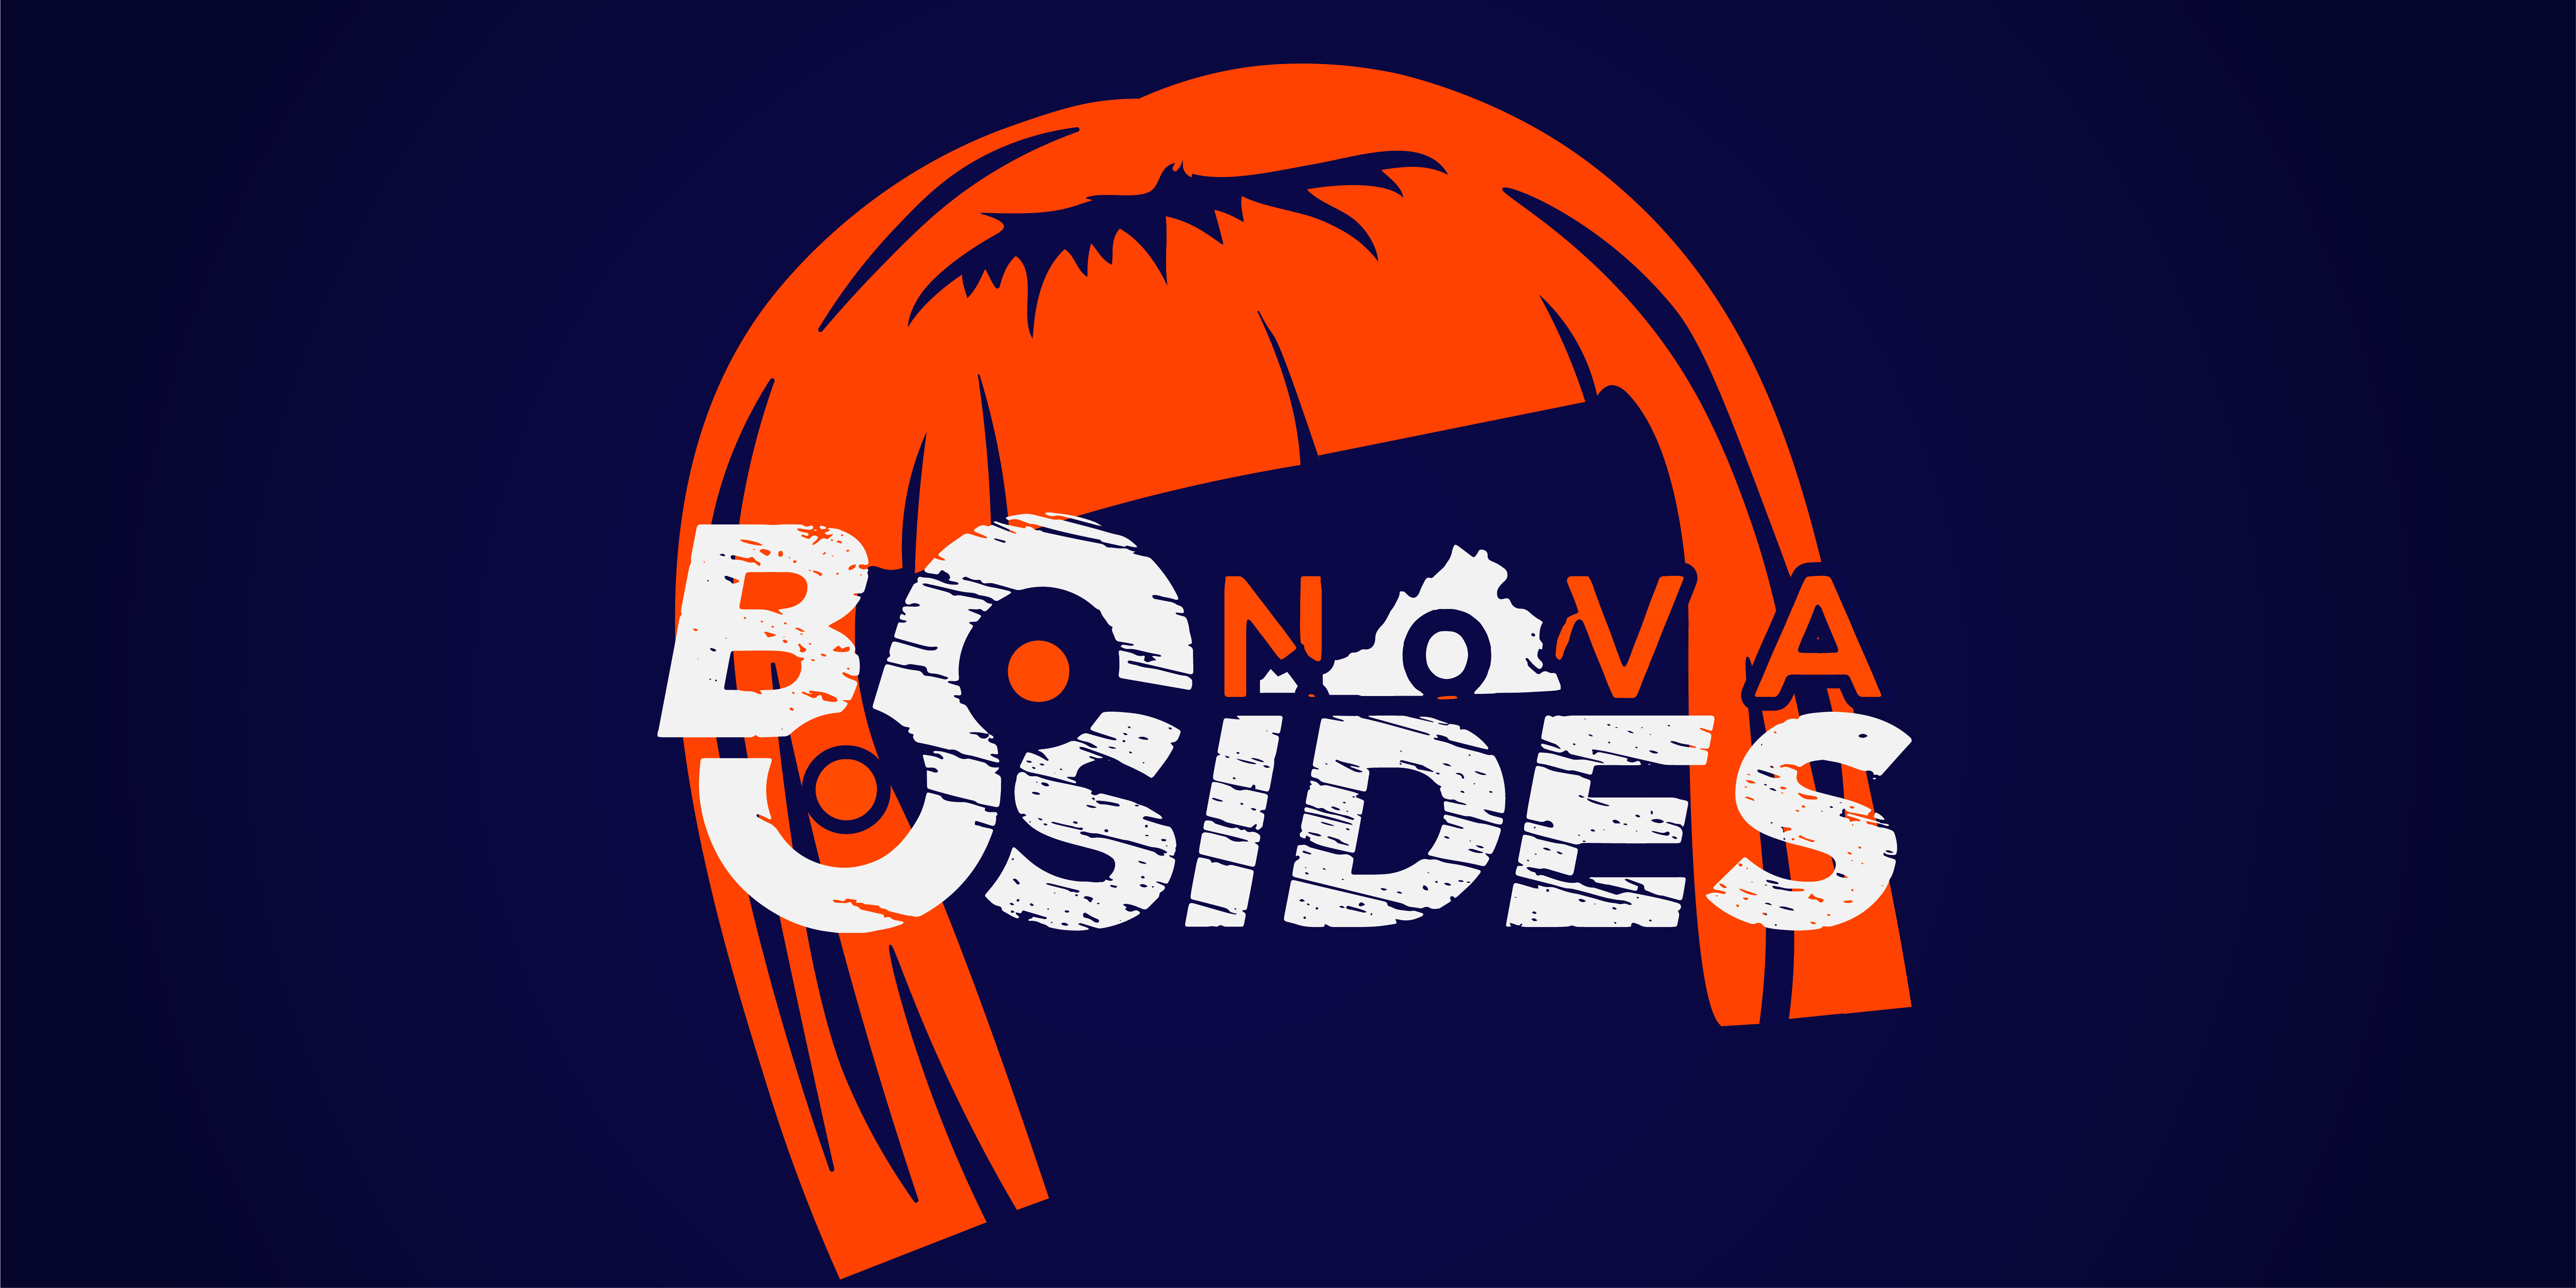 BSidesNoVA 2021 event logo